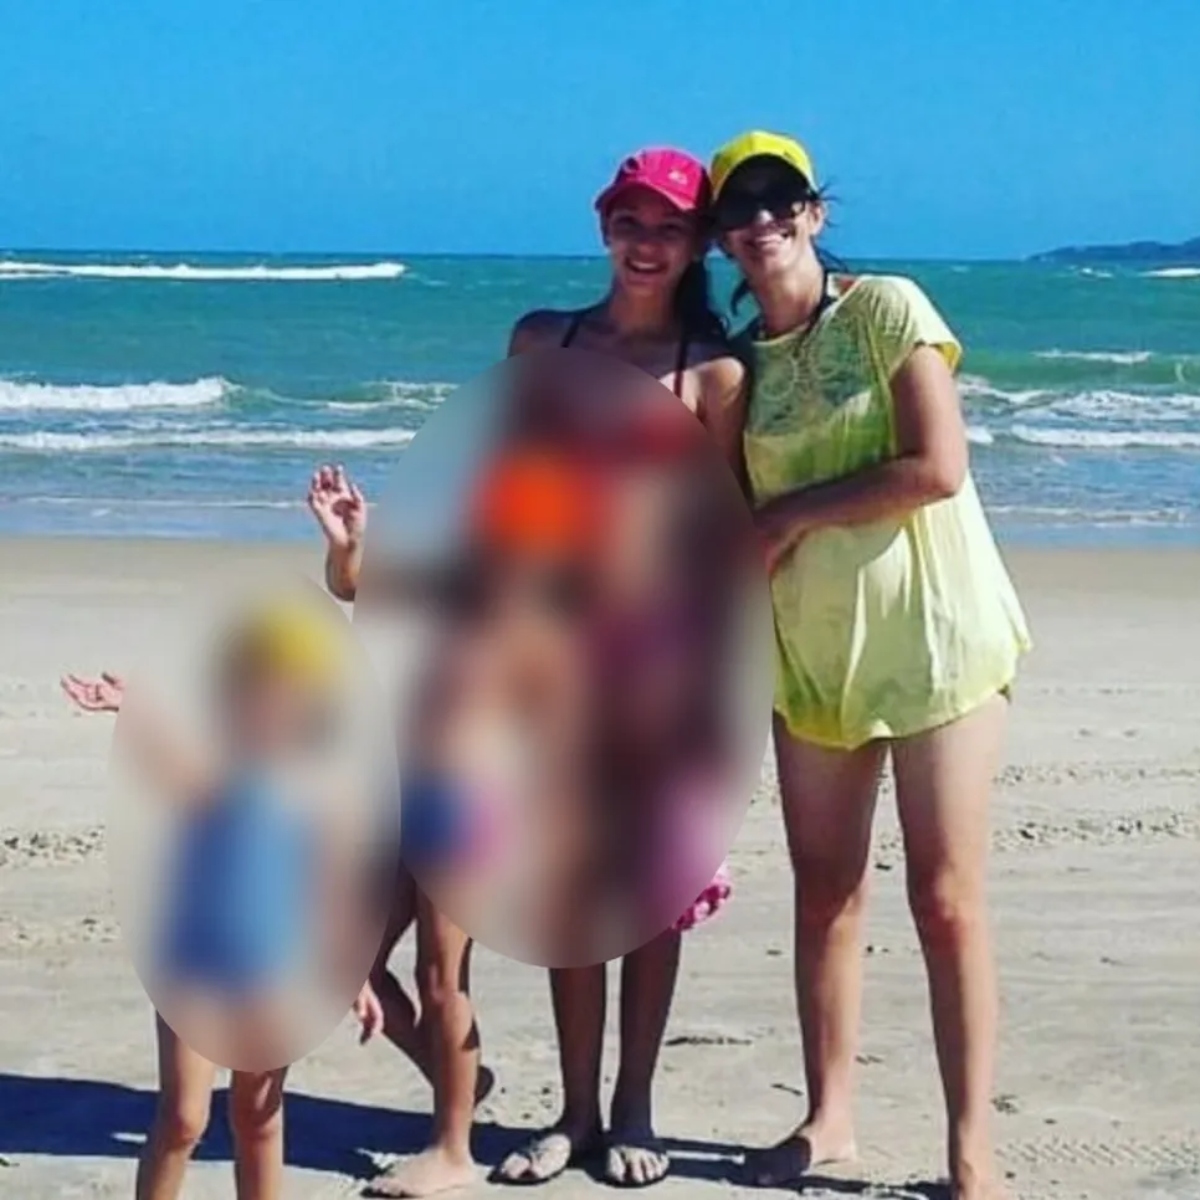  Mãe e três filhas são mortas a facadas; vítimas foram encontradas nuas 